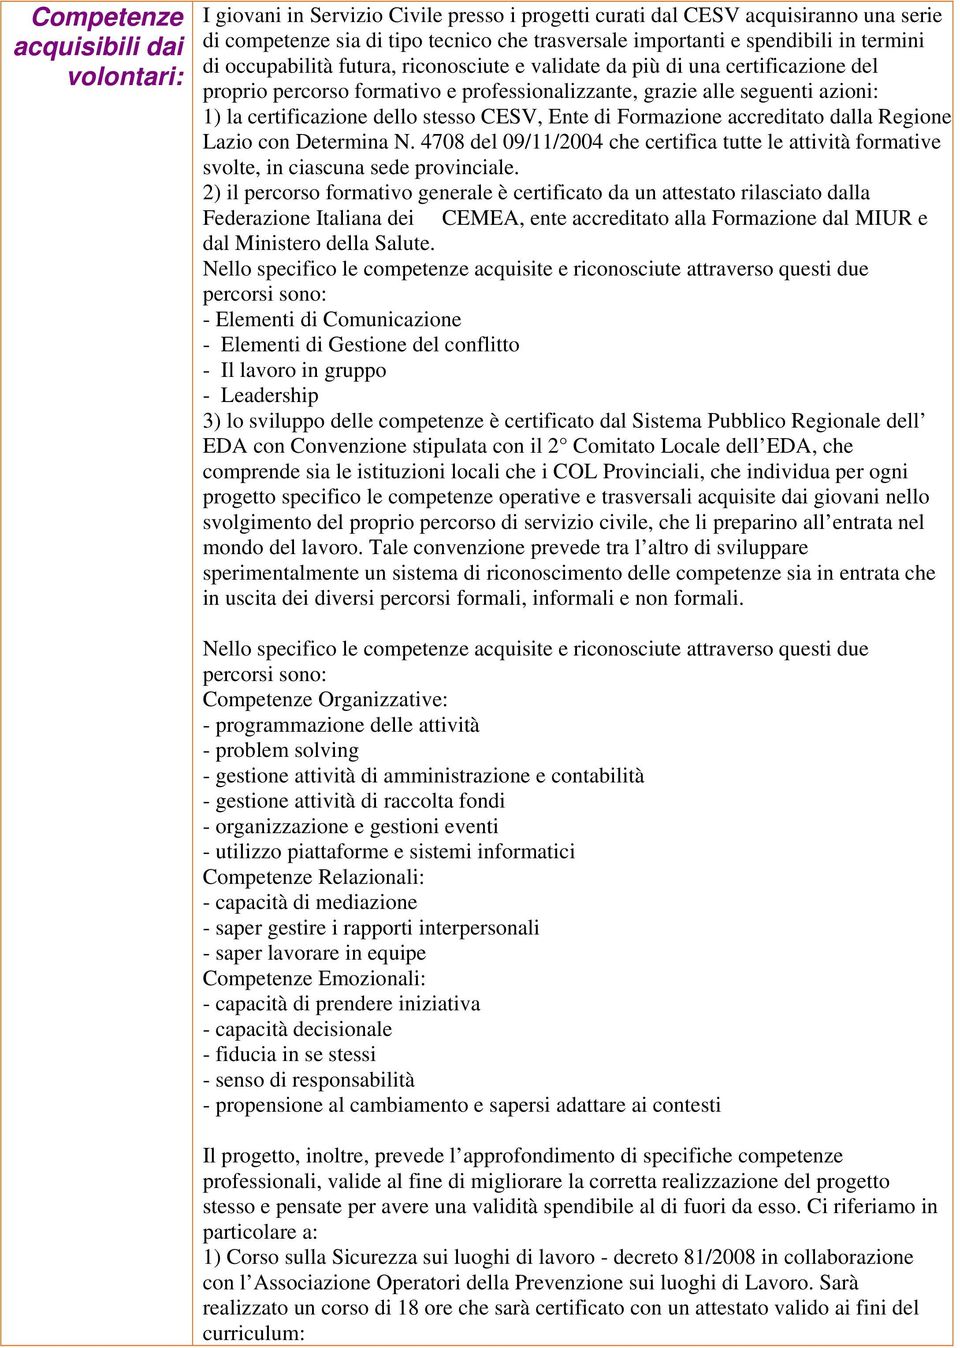 stesso CESV, Ente di Formazione accreditato dalla Regione Lazio con Determina N. 4708 del 09/11/2004 che certifica tutte le attività formative svolte, in ciascuna sede provinciale.